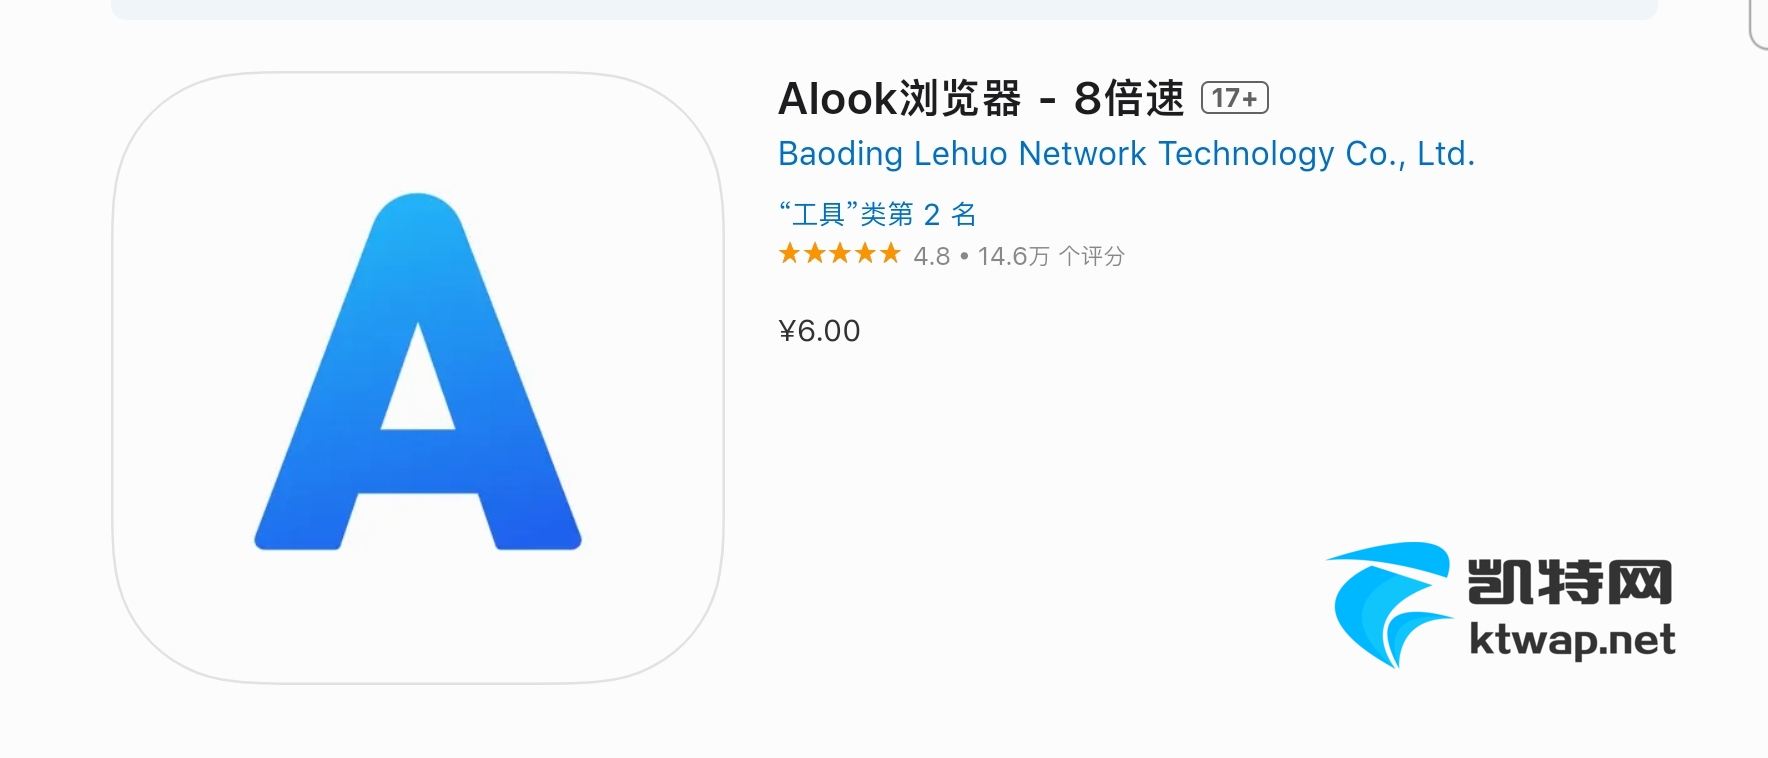 【证书更新 iOS】Alook浏览器 - 8倍速－解锁版